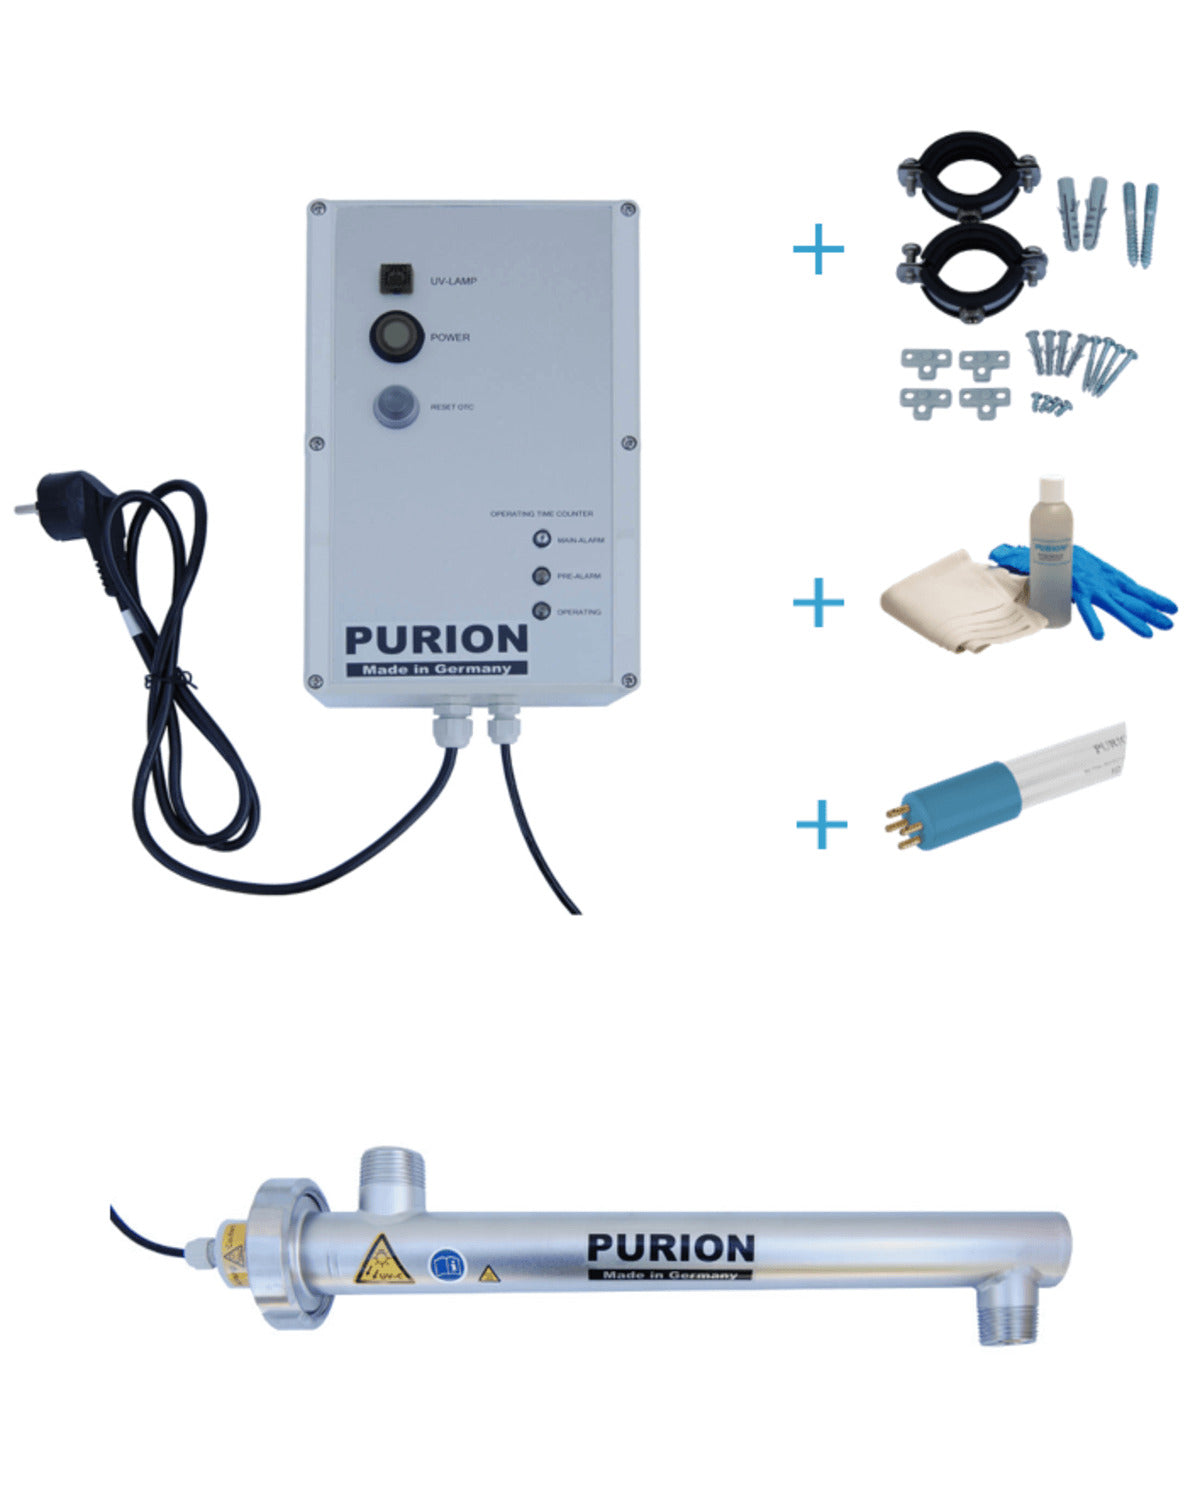 Der Satz lautet: Das PURION 1000 H OTC Bundle der PURION GmbH nutzt die UV-C-Desinfektionstechnologie, um Legionellen effektiv zu beseitigen und gleichzeitig stromsparend zu sein.